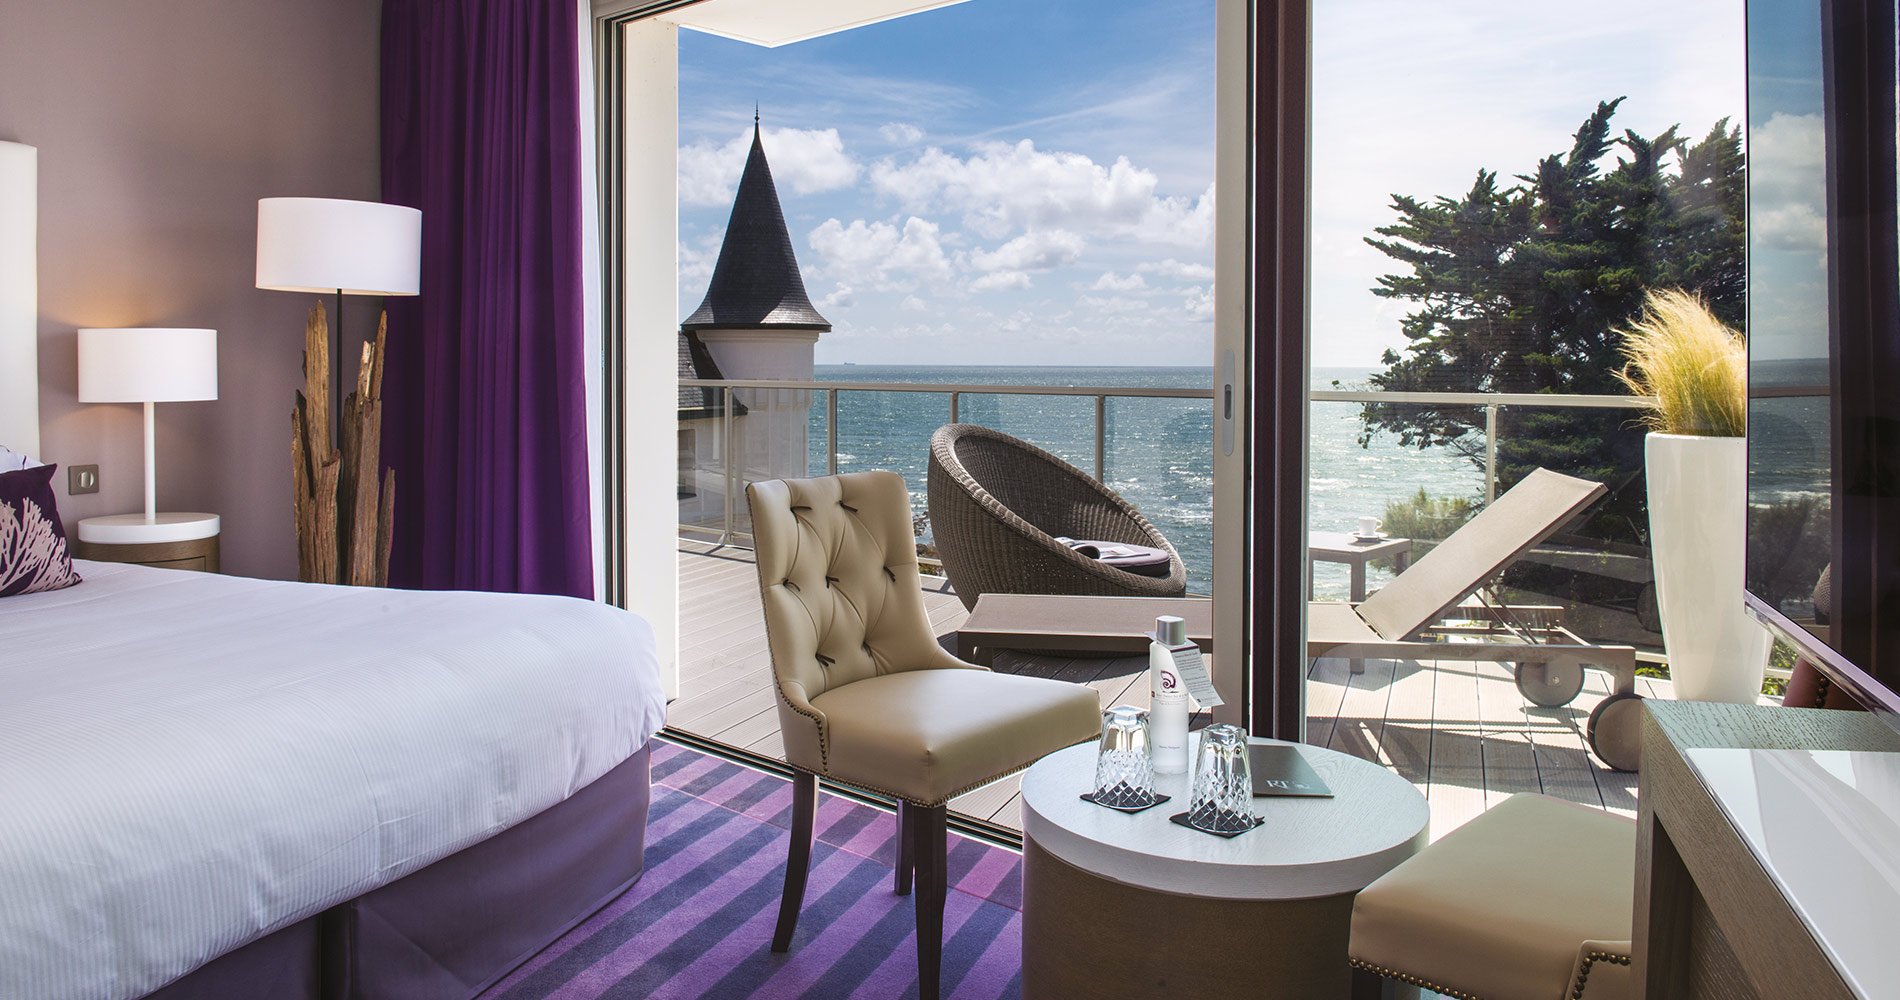 luxury hotel Château des Tourelles Hôtel 4 stars Thalasso Spa La Baule France cosy bedroom